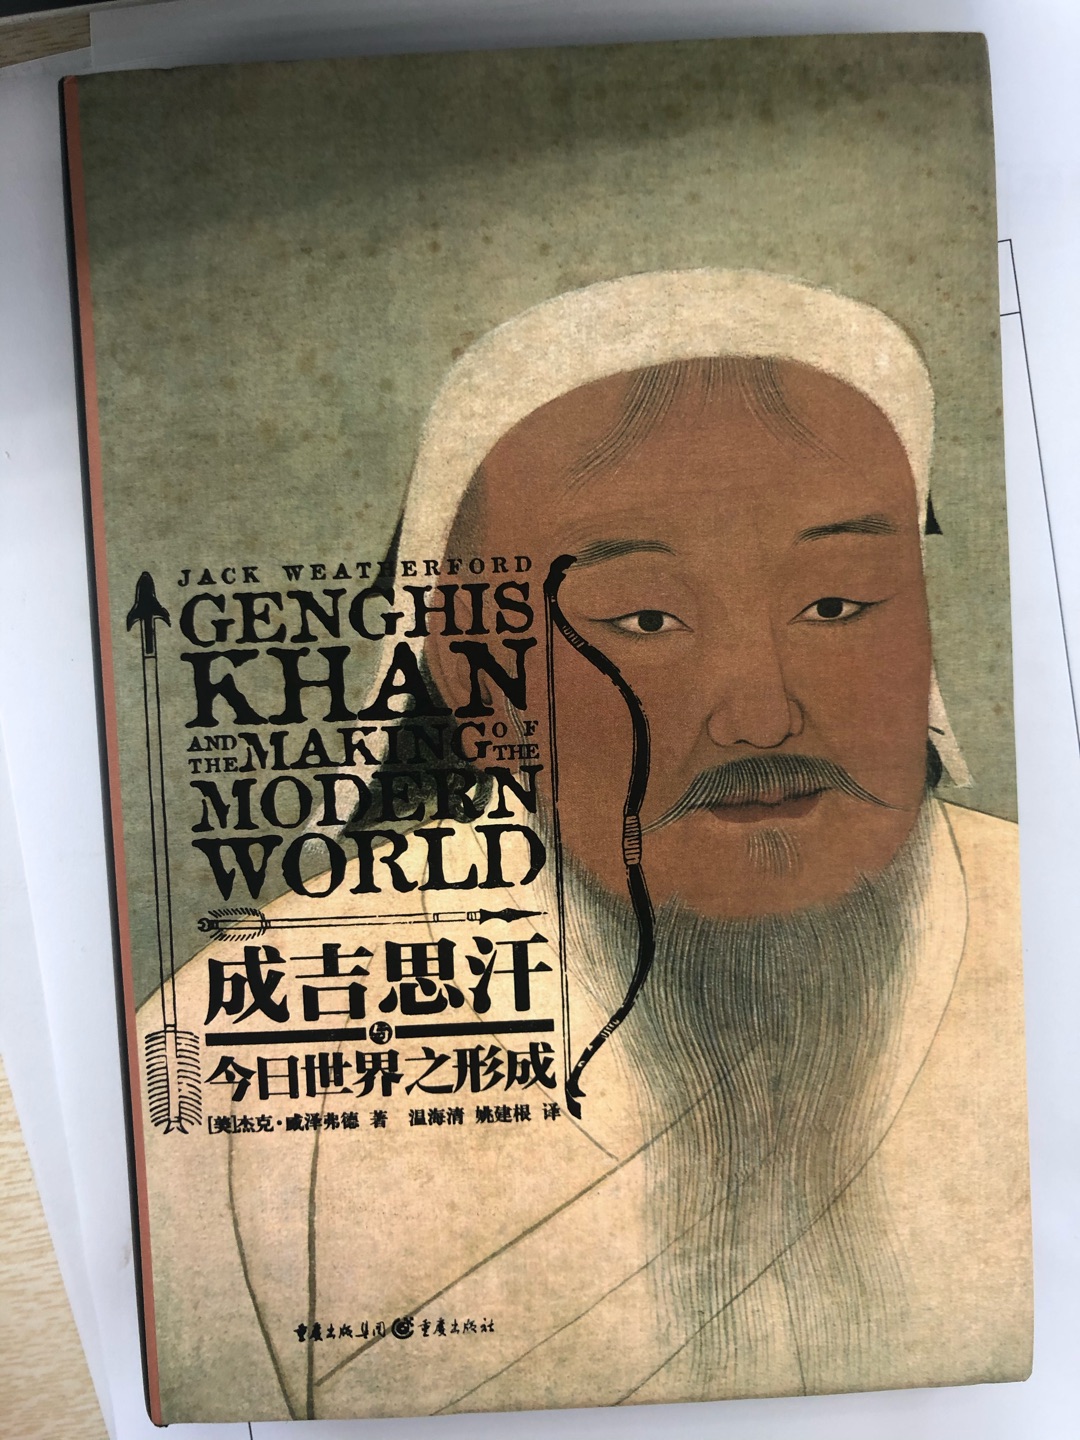 蒙古帝国的研究，需要涉及广袤的地域，成吉思汗开疆拓土的征服故事，路上丝绸之路的发展，在今日可谓众所周知